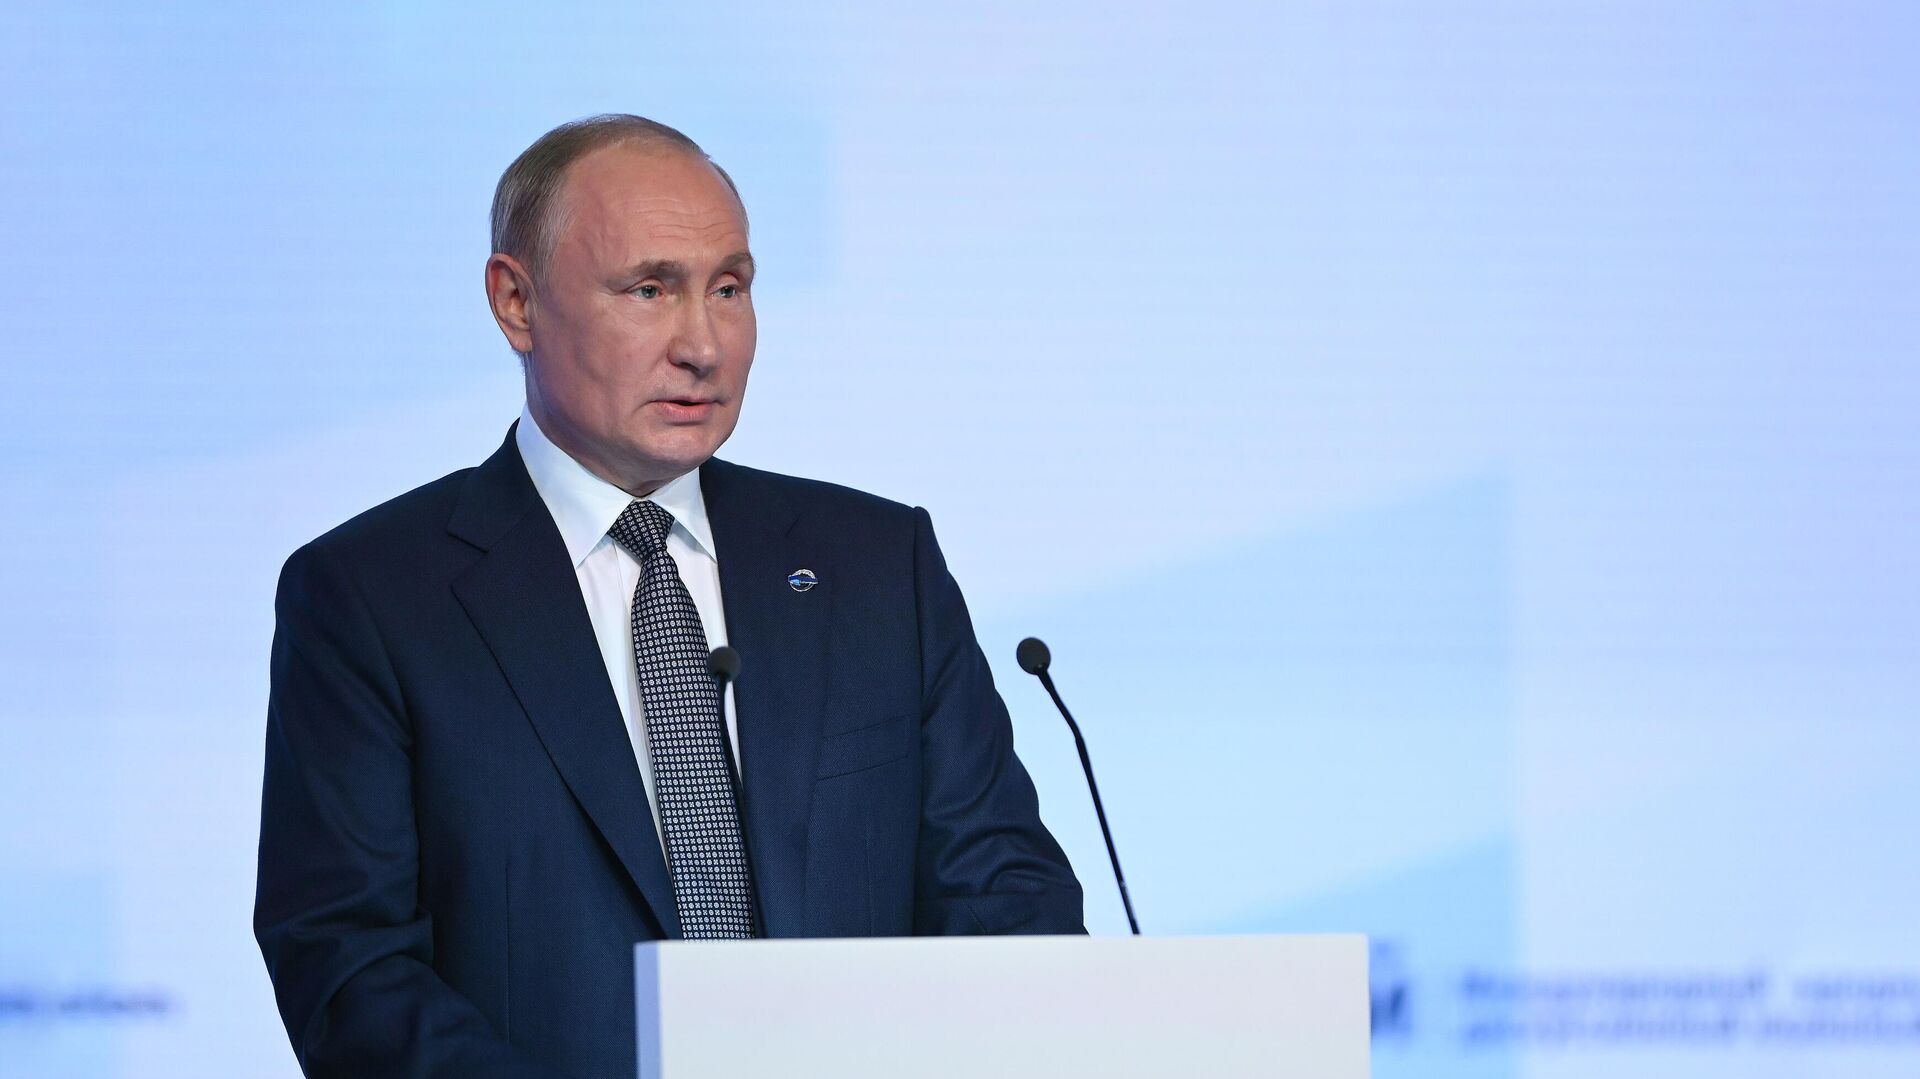 Графики выступления Путина на G20 согласовываются, заявил Песков